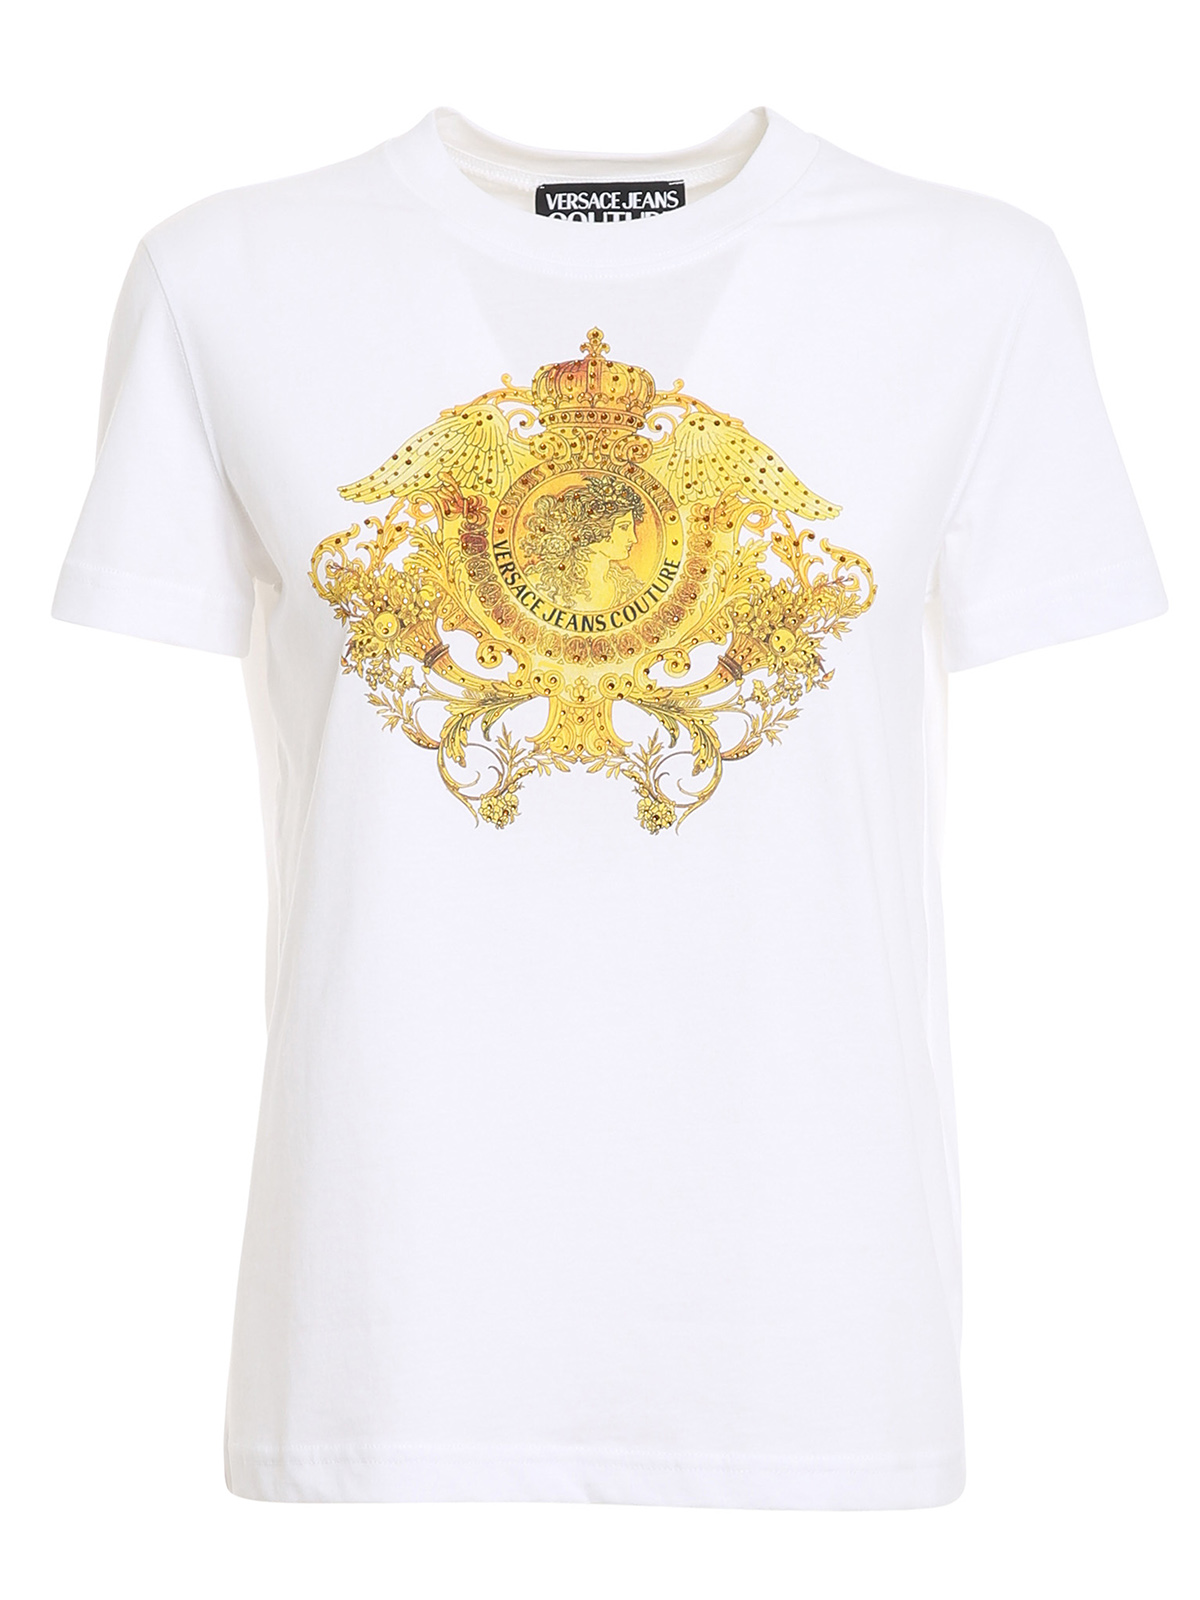 versace t shirt gold logo